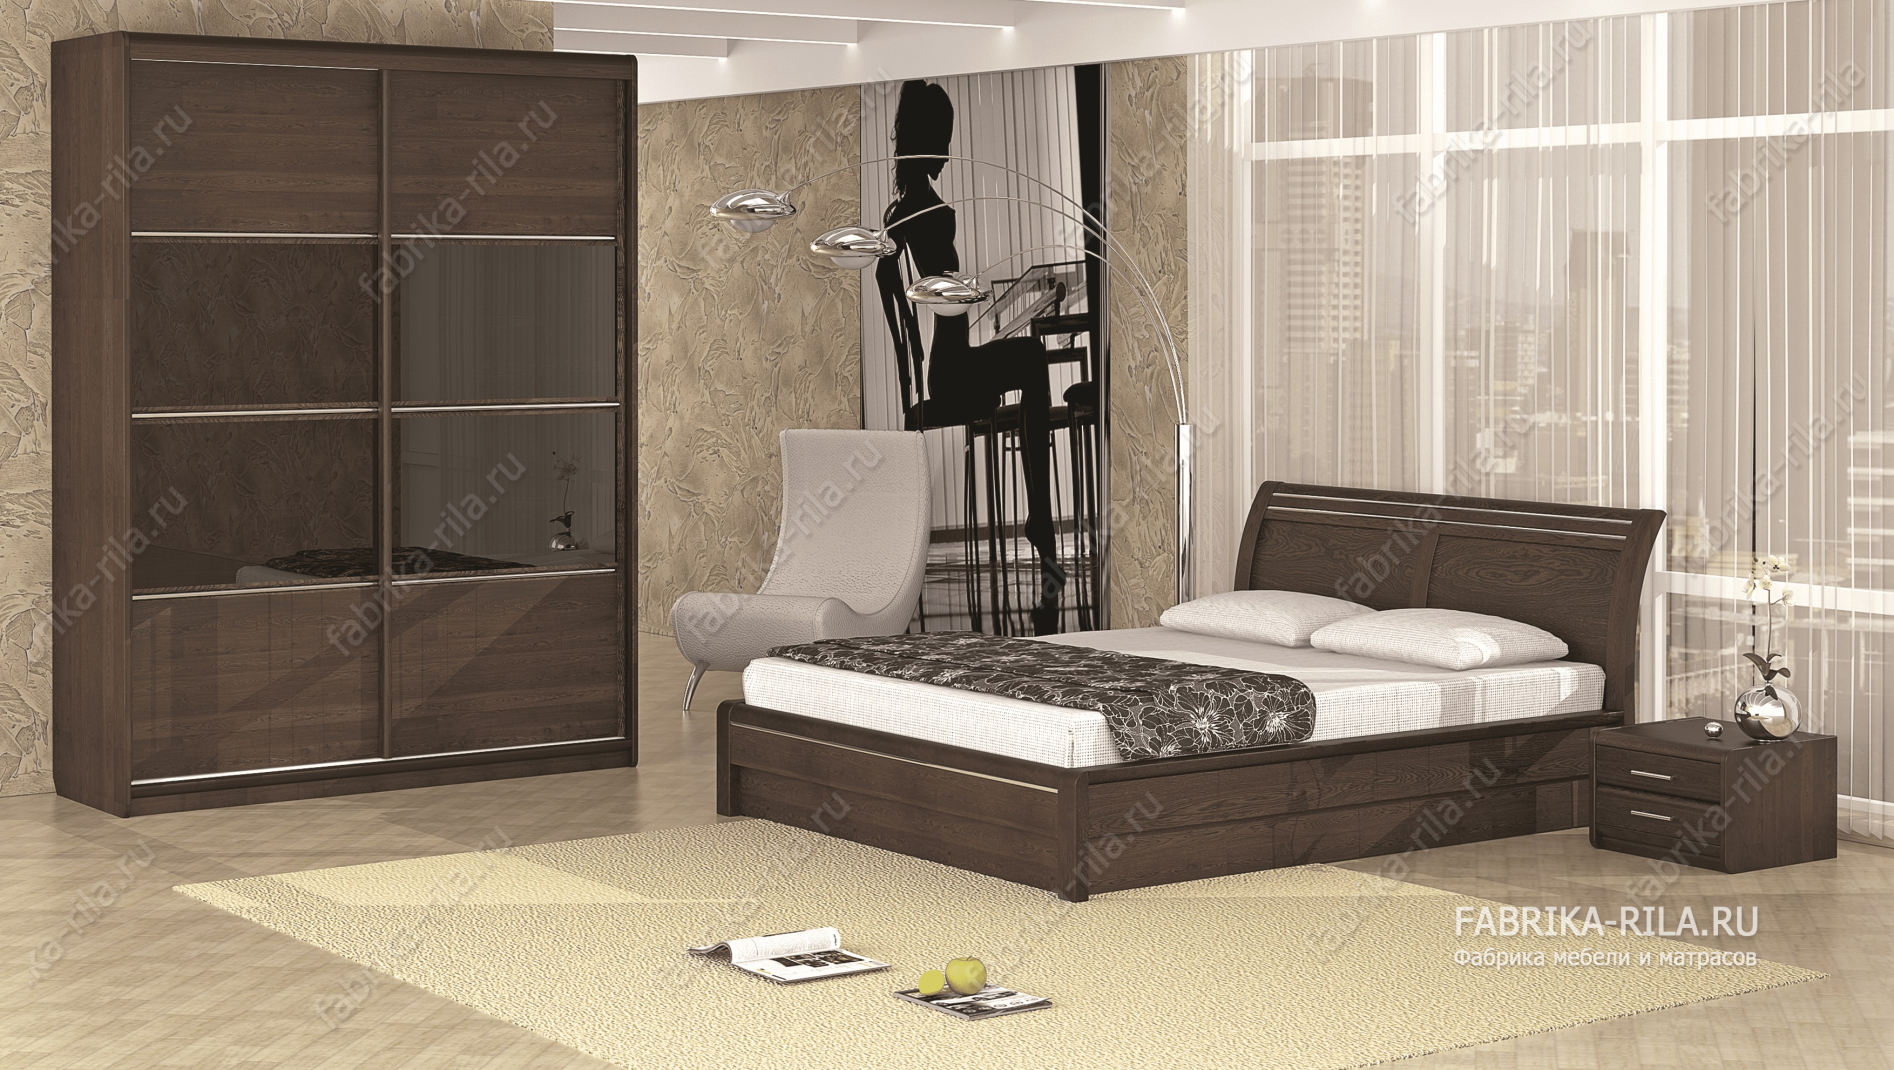 Кровать Okaeri 2 — 140x200 см. из сосны